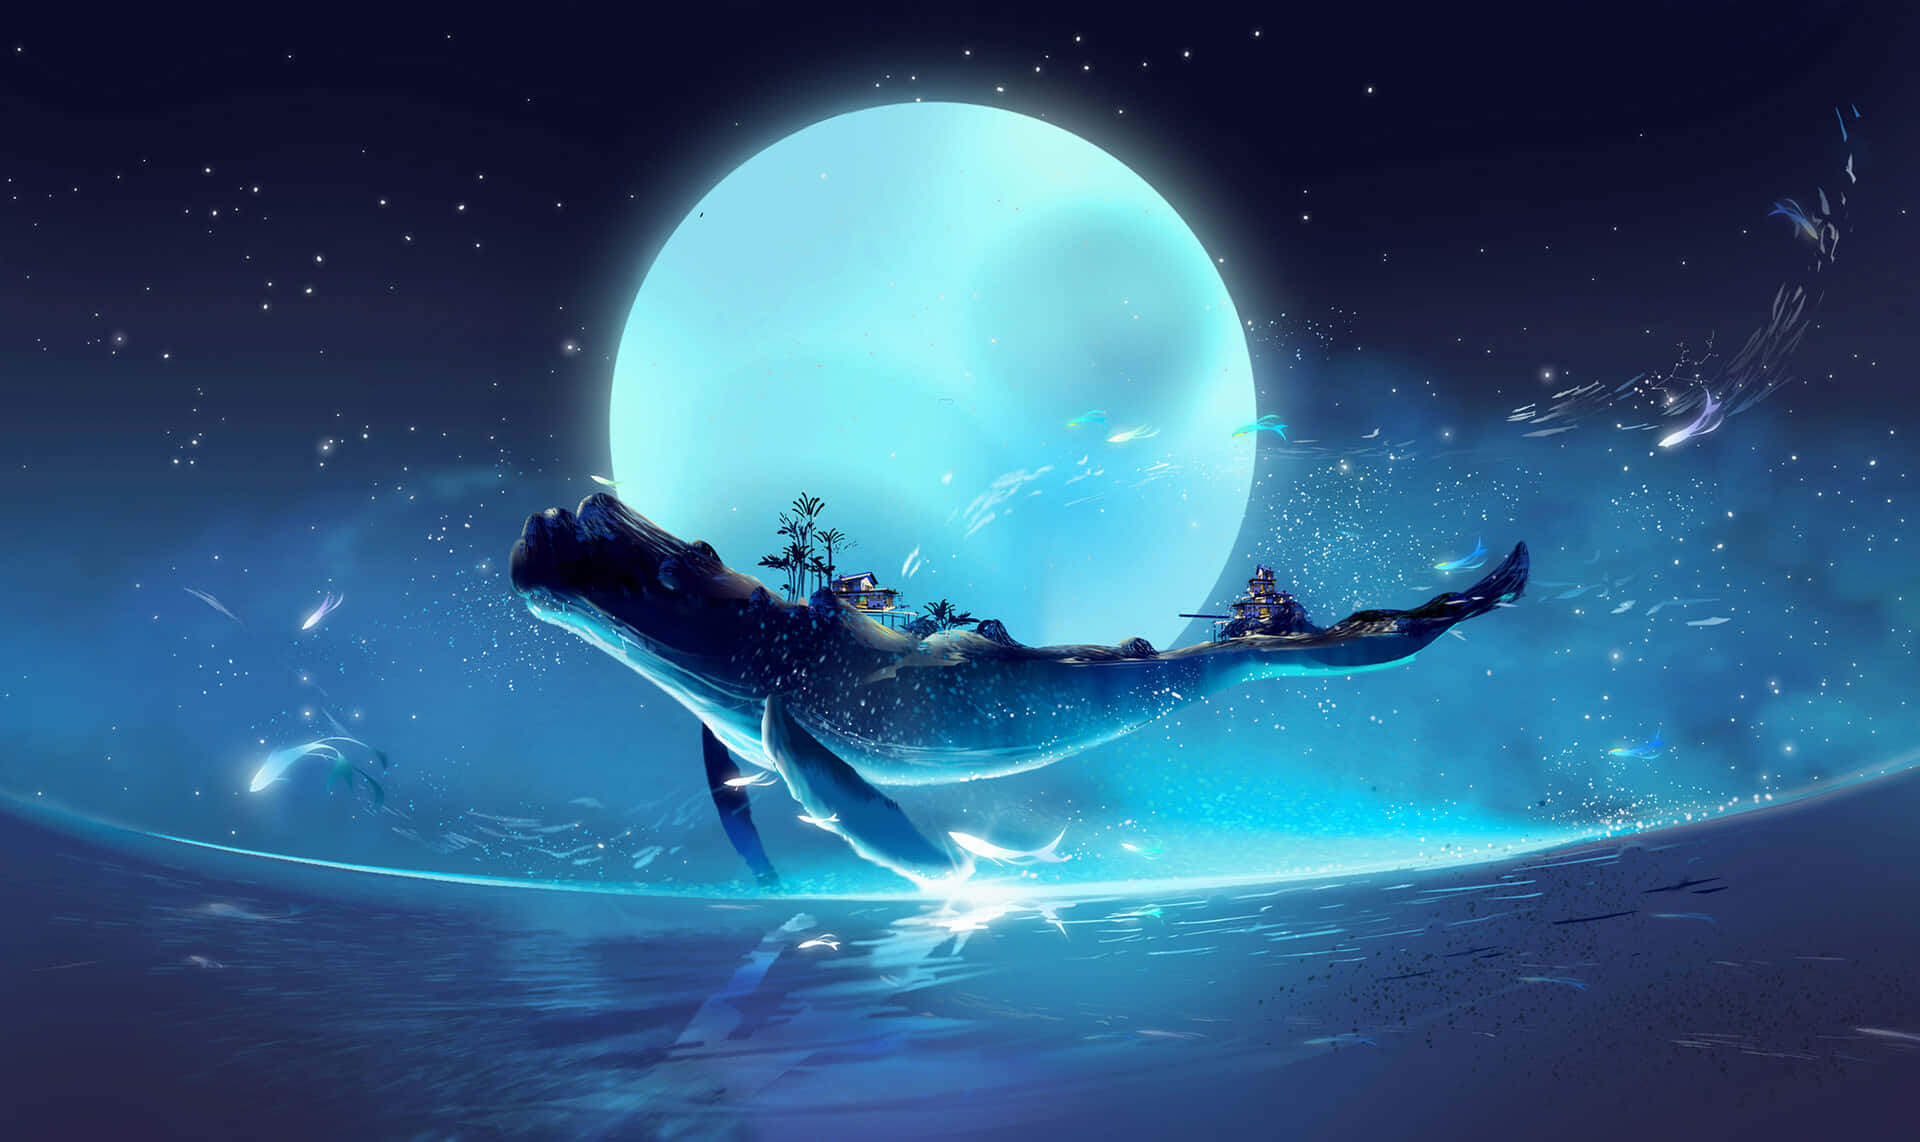 Balenablu Salto Sulla Luna, Immagine Fantasiosa Di Un Oceano